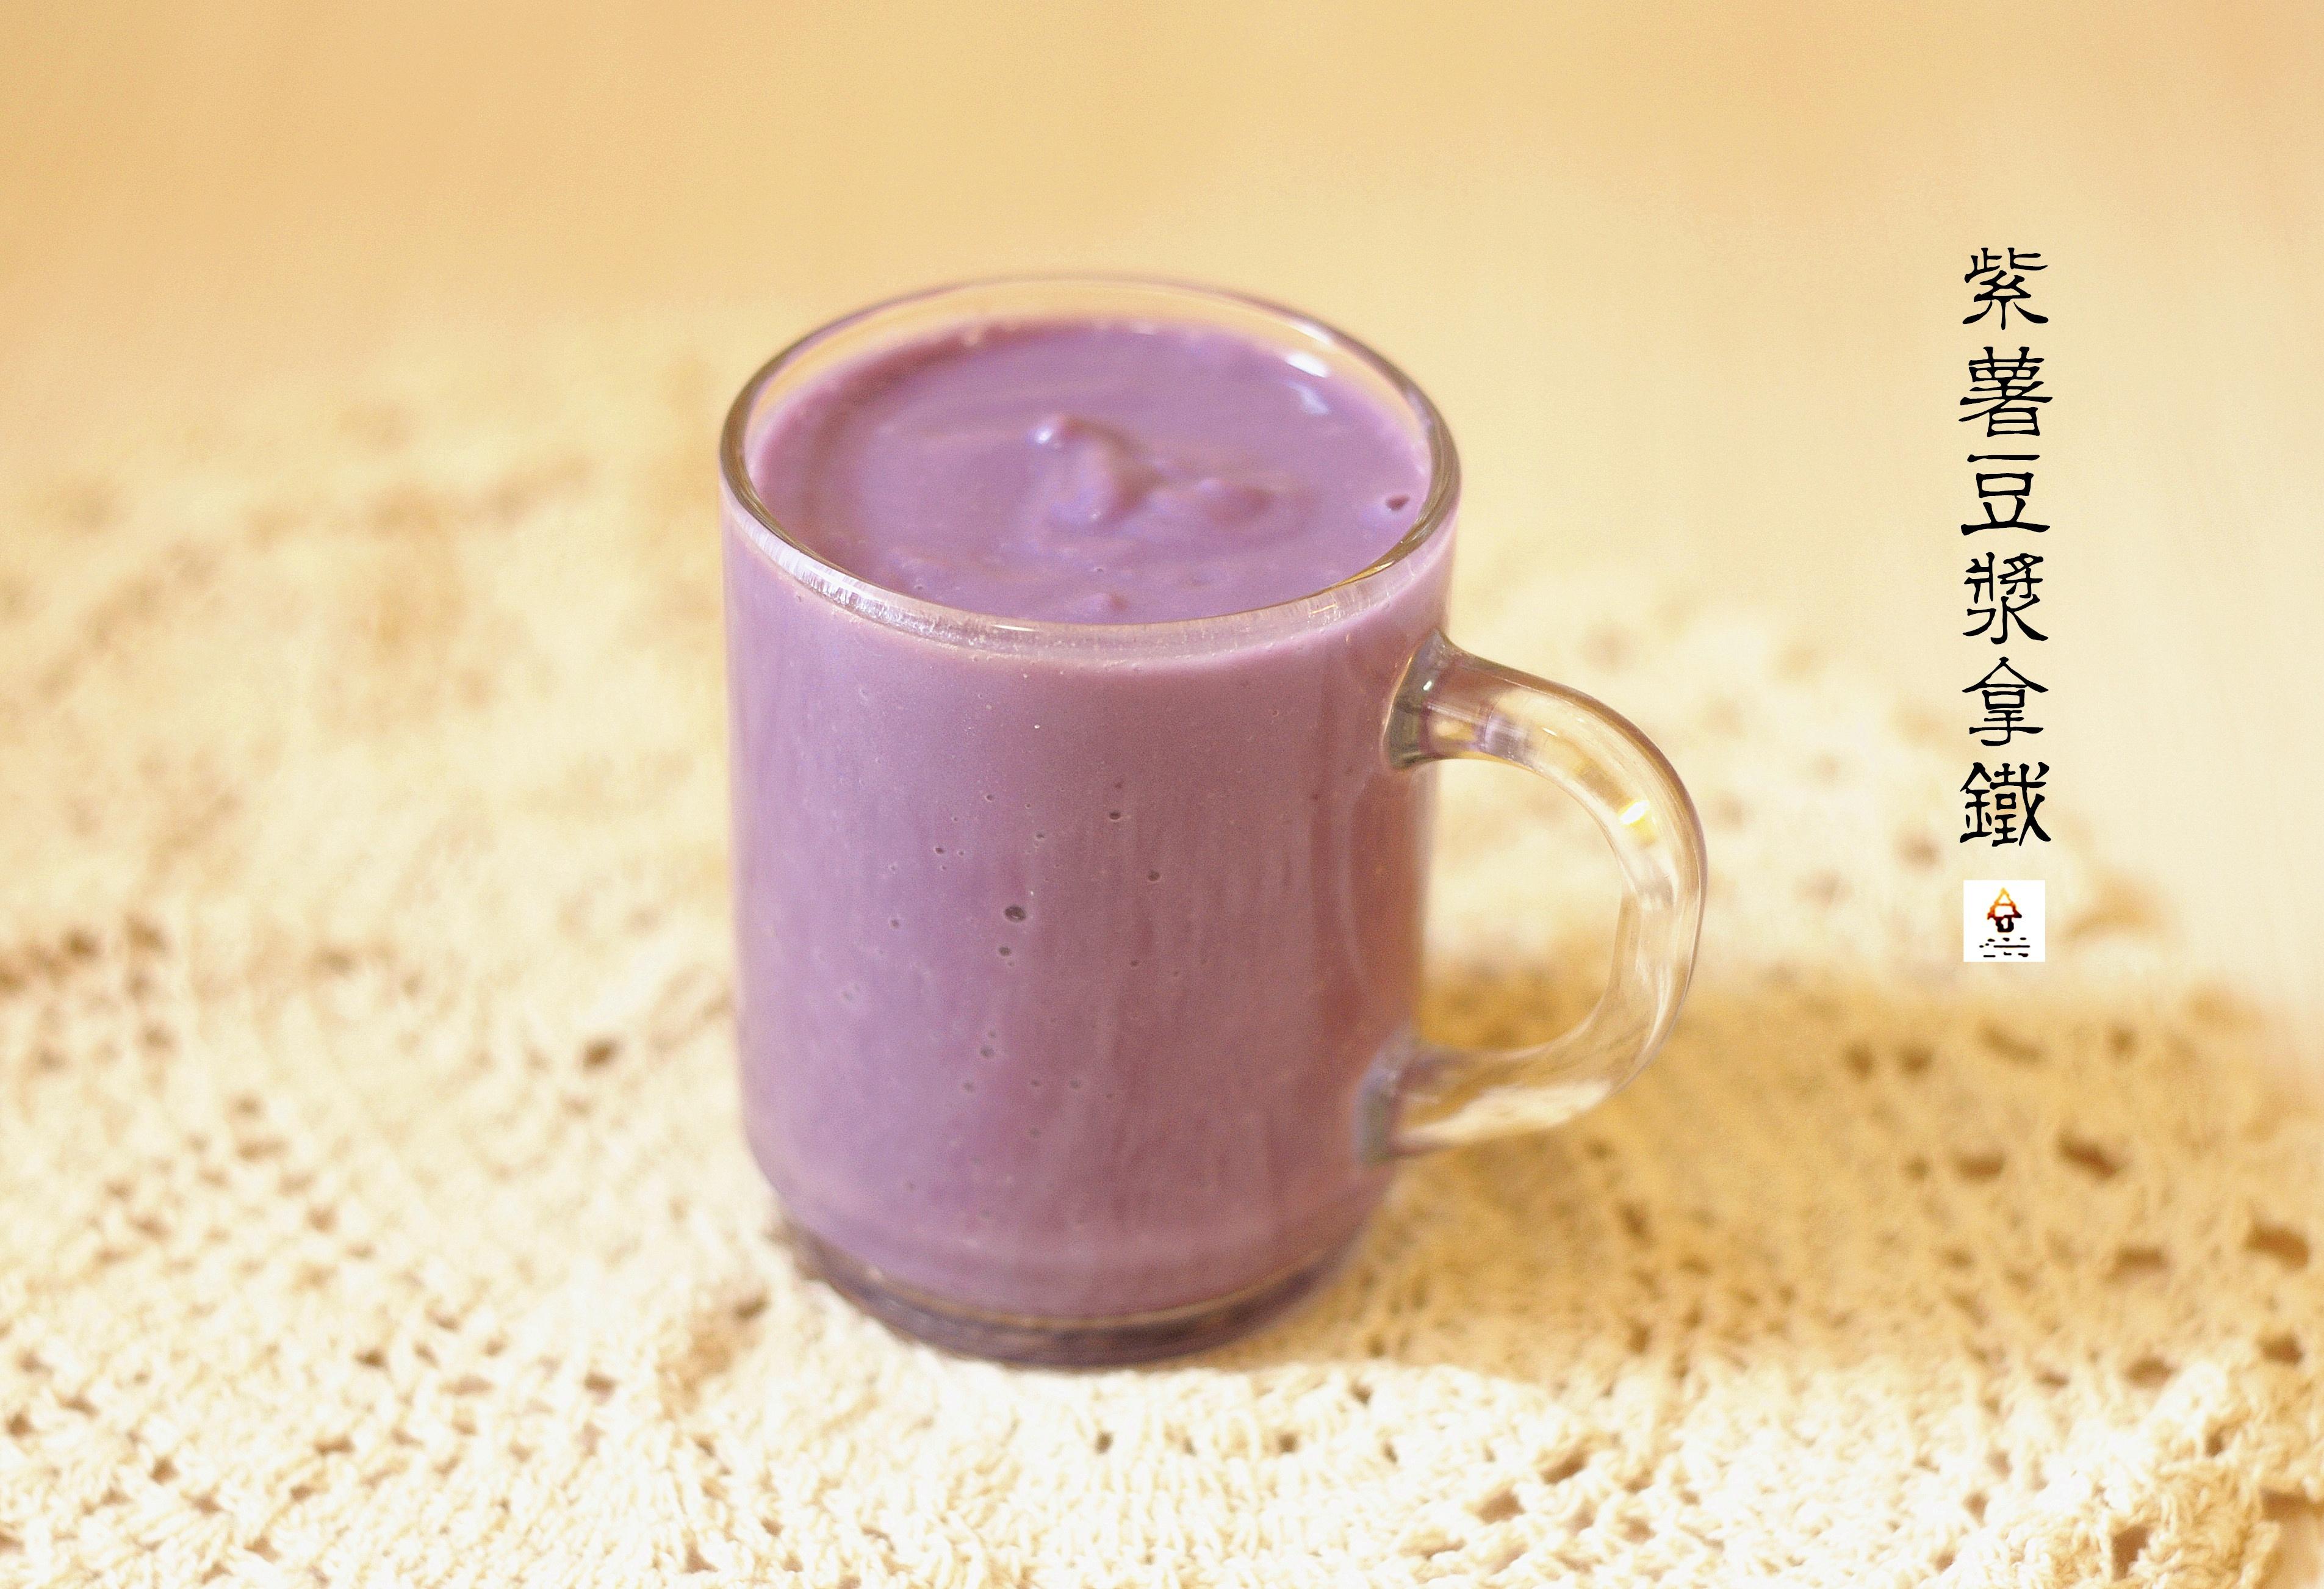 紫薯豆浆拿铁(Purple Sweet Potato Soy Latte)的做法